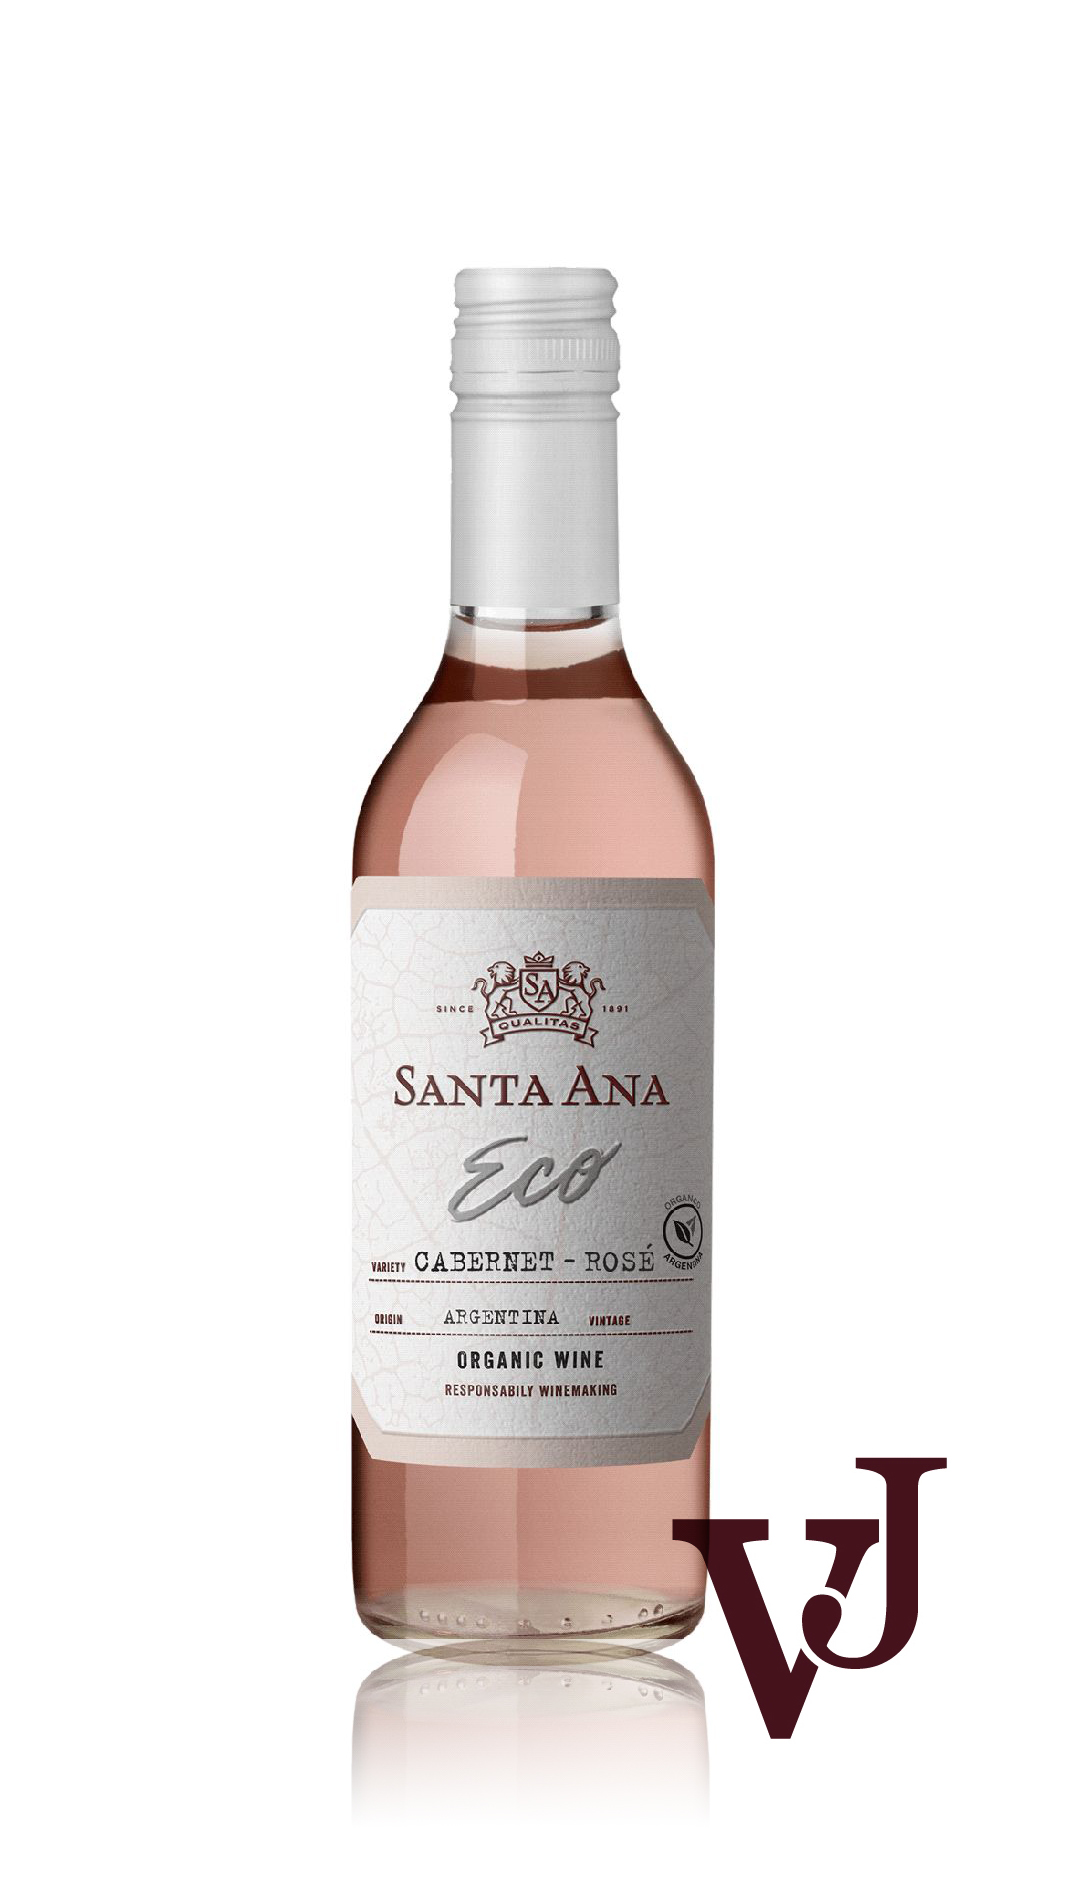 Rosé Vin - Santa Ana Organic Cabernet Sauvignon Rosé artikel nummer 692102 från producenten Bodegas Santa Ana från området Argentina